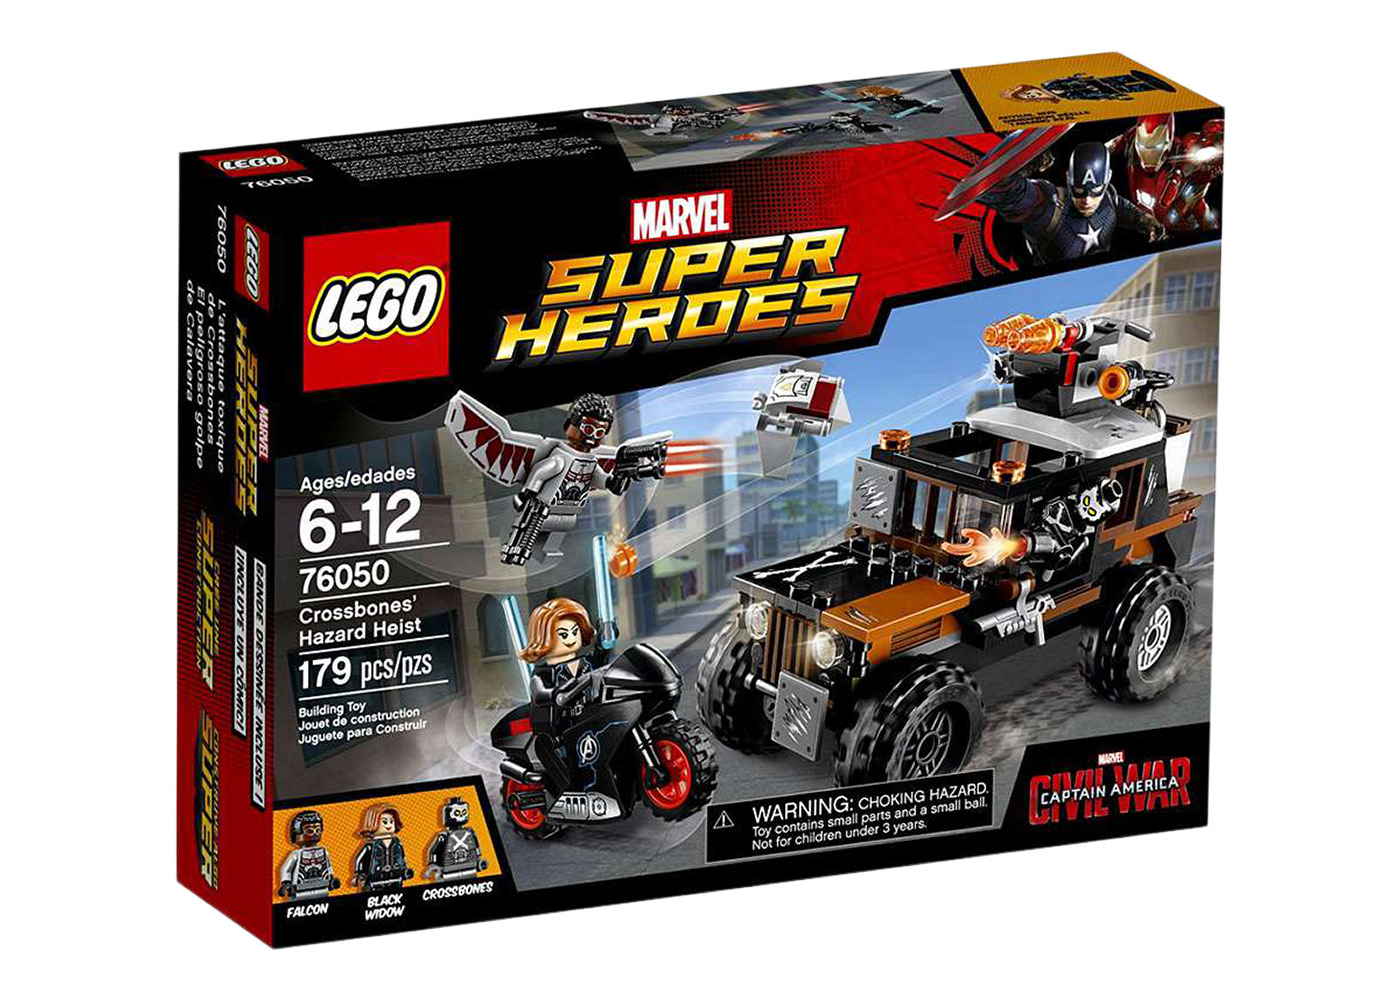 LEGO Marvel Super Heroes Hulk's Helicarrier Breakout Set 6868 - US